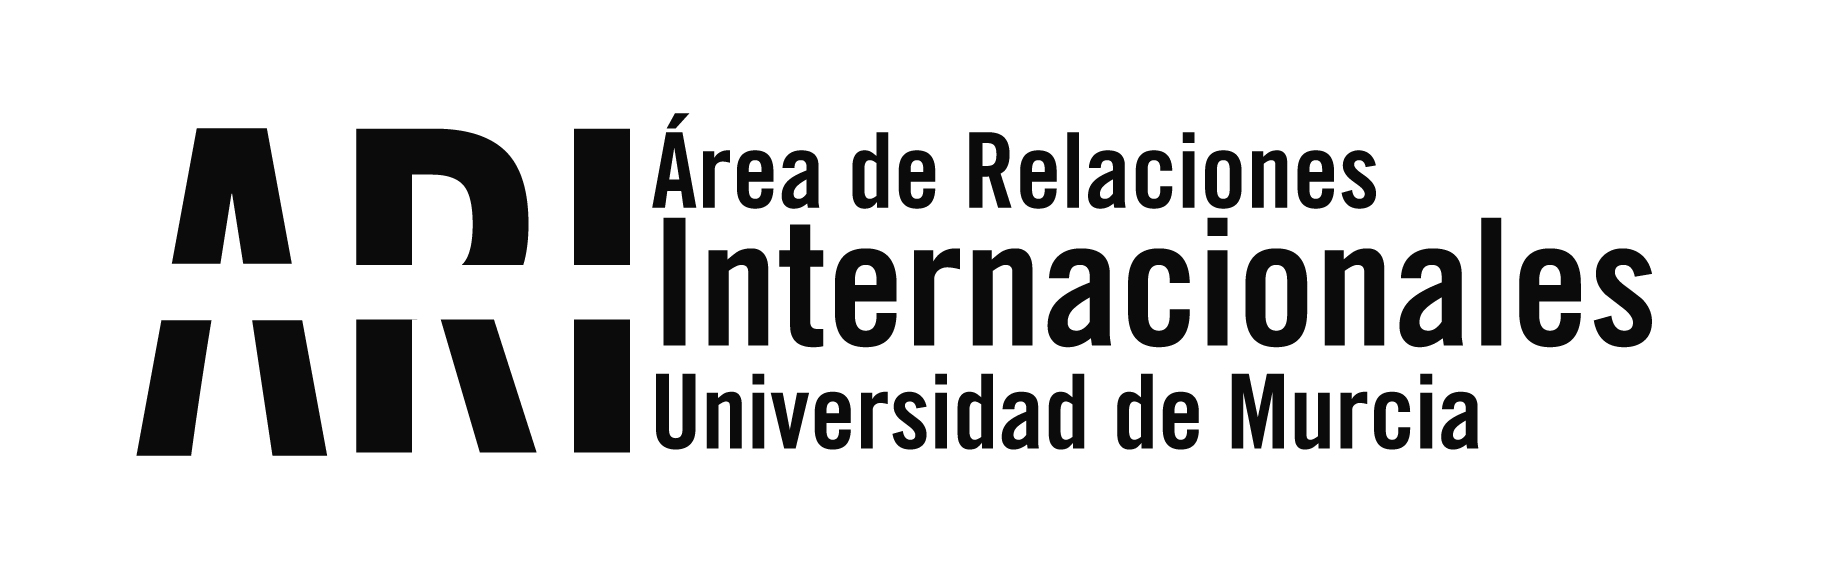 Sesión virtual informativa para seleccionados UMU del programa ILA de Intercambio con Latinoamérica 2020-21 - Área de Relaciones Internacionales